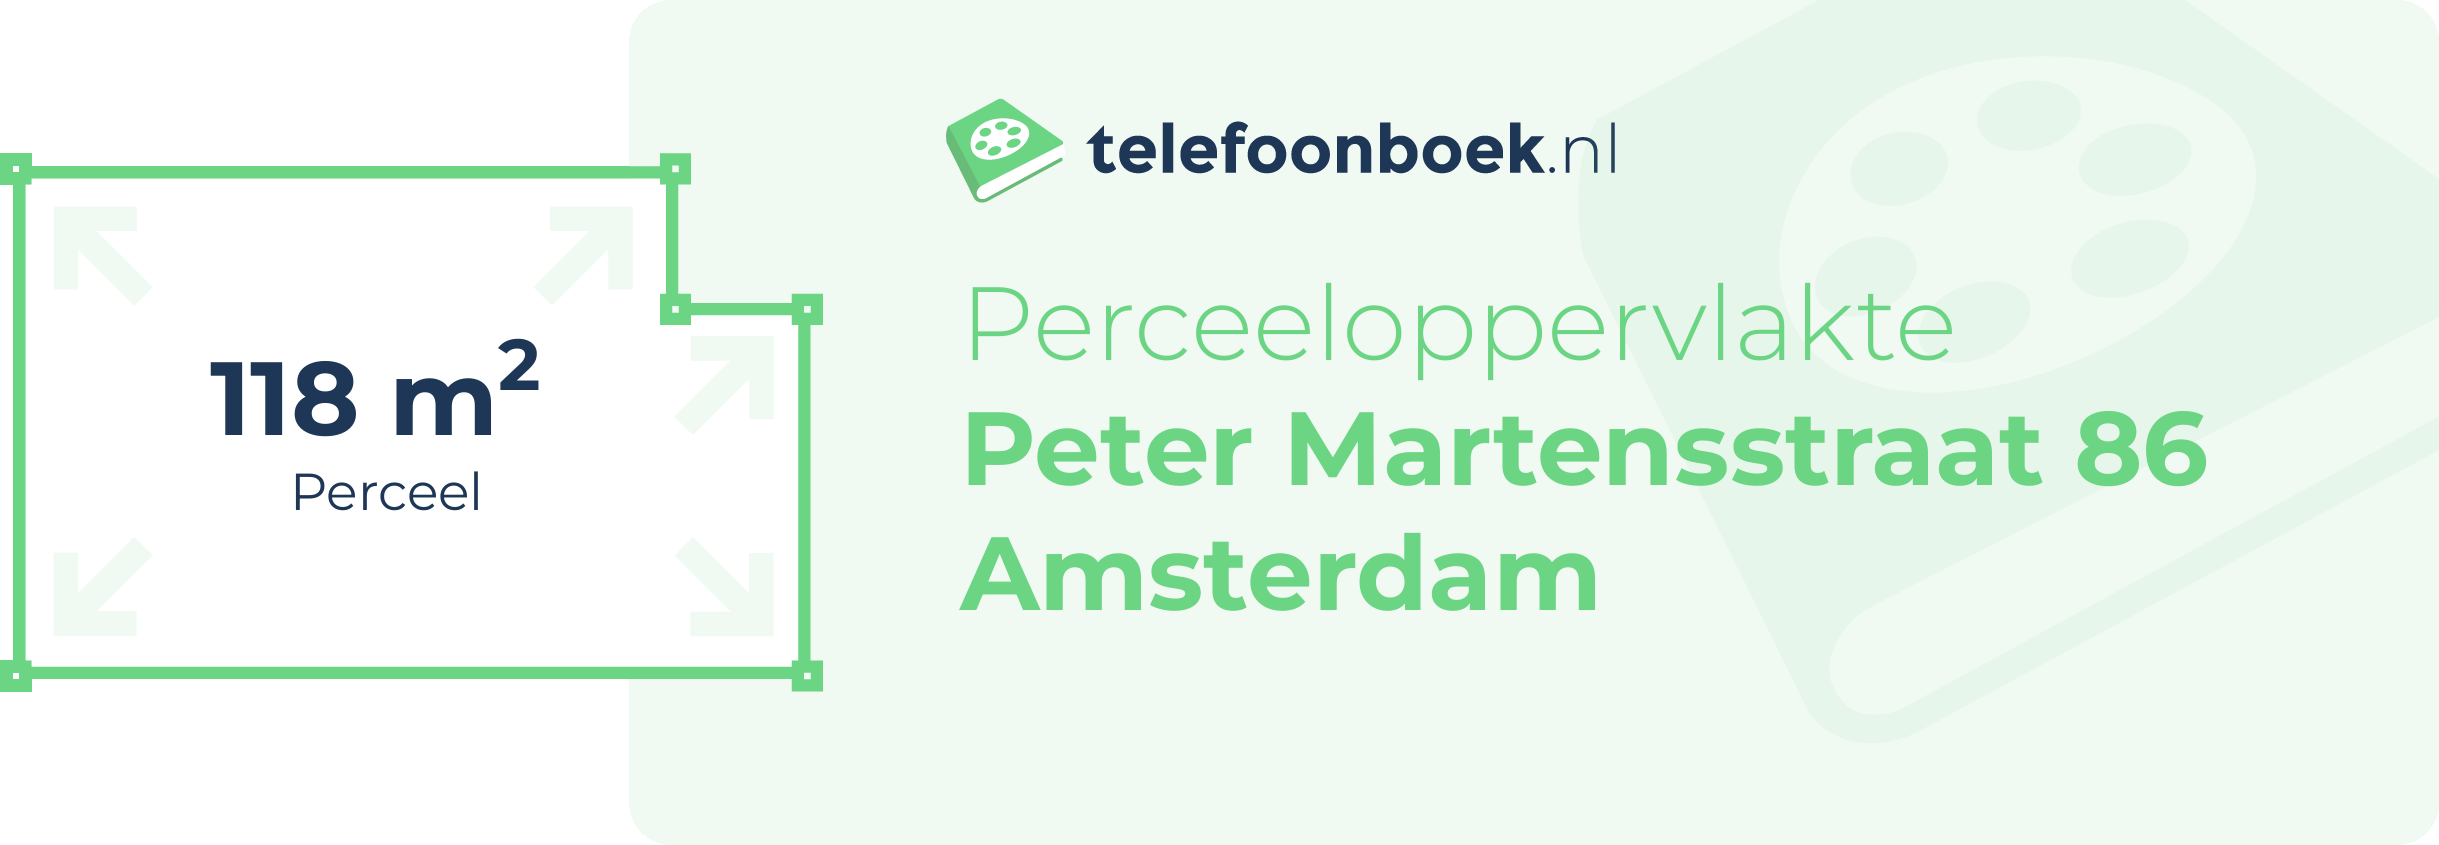 Perceeloppervlakte Peter Martensstraat 86 Amsterdam